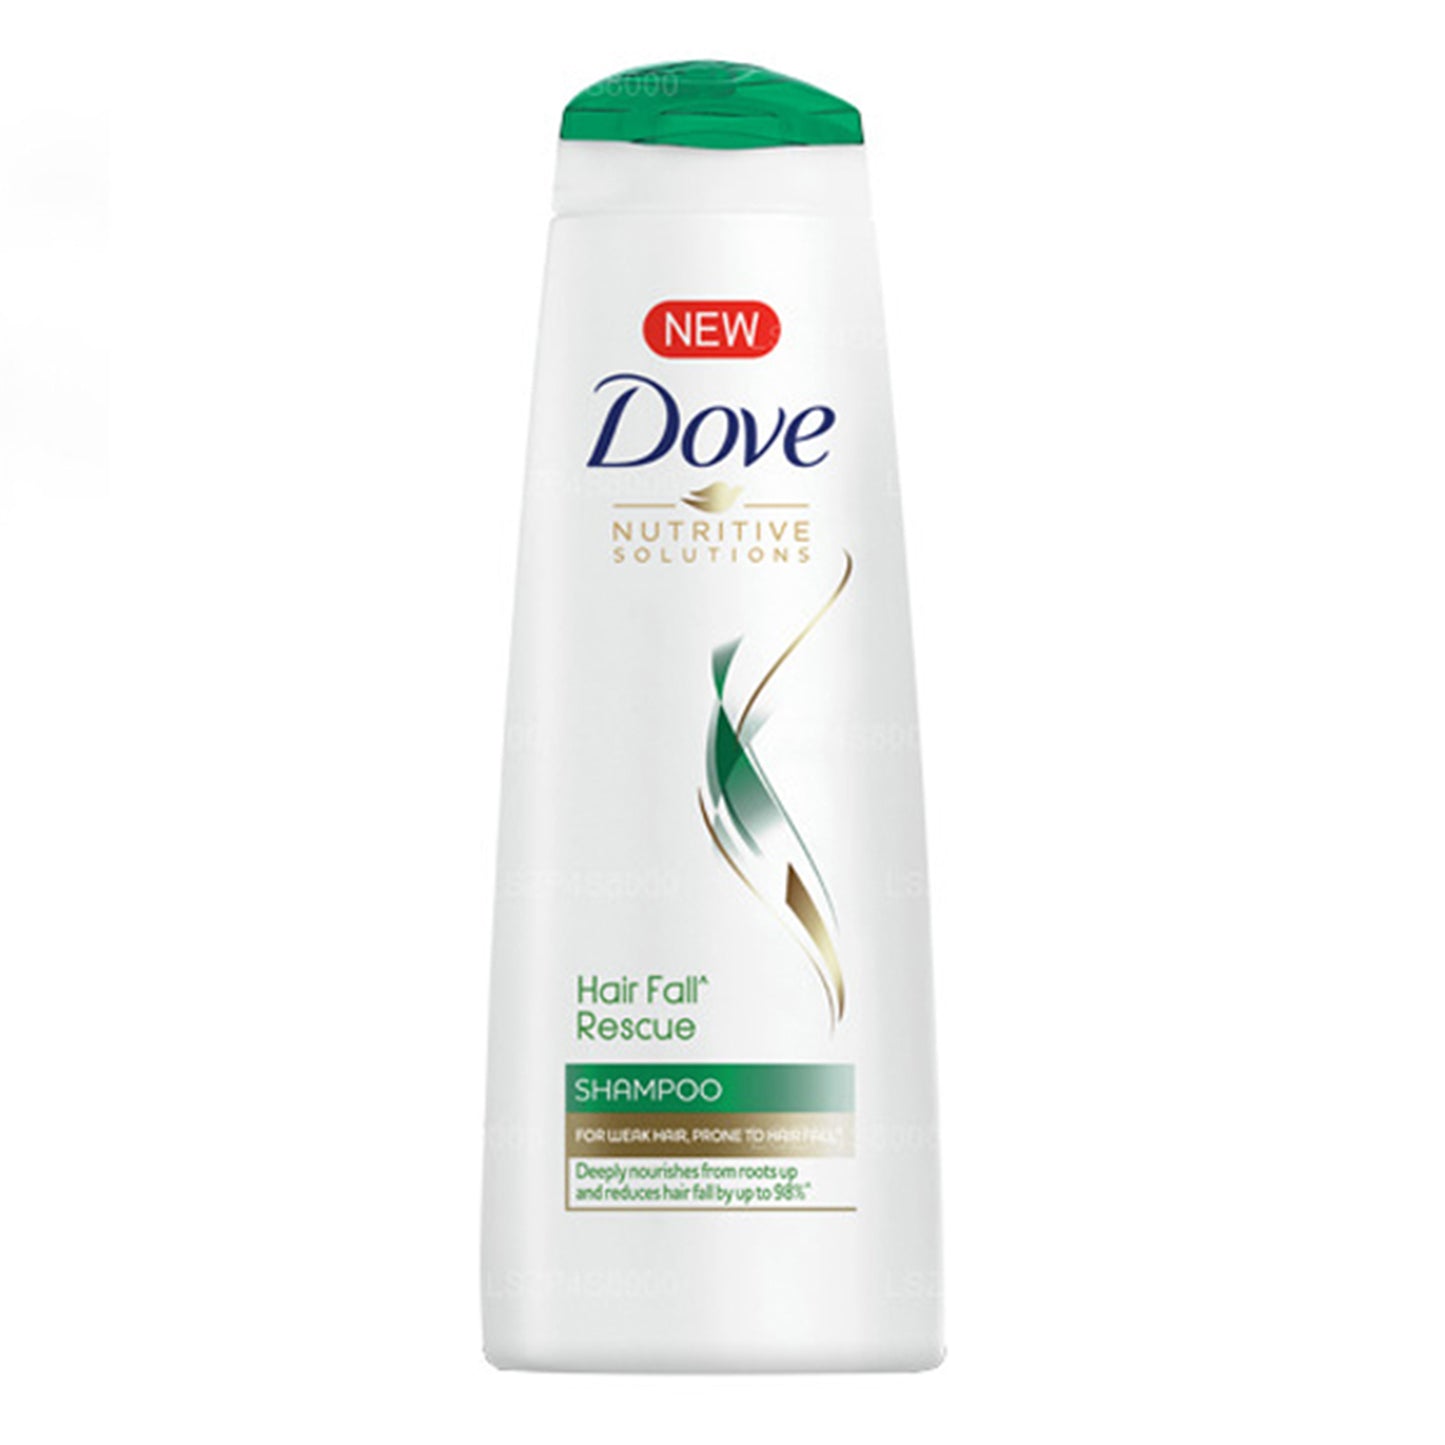 Dove Hair Fall Rescue Shampoo (180g)